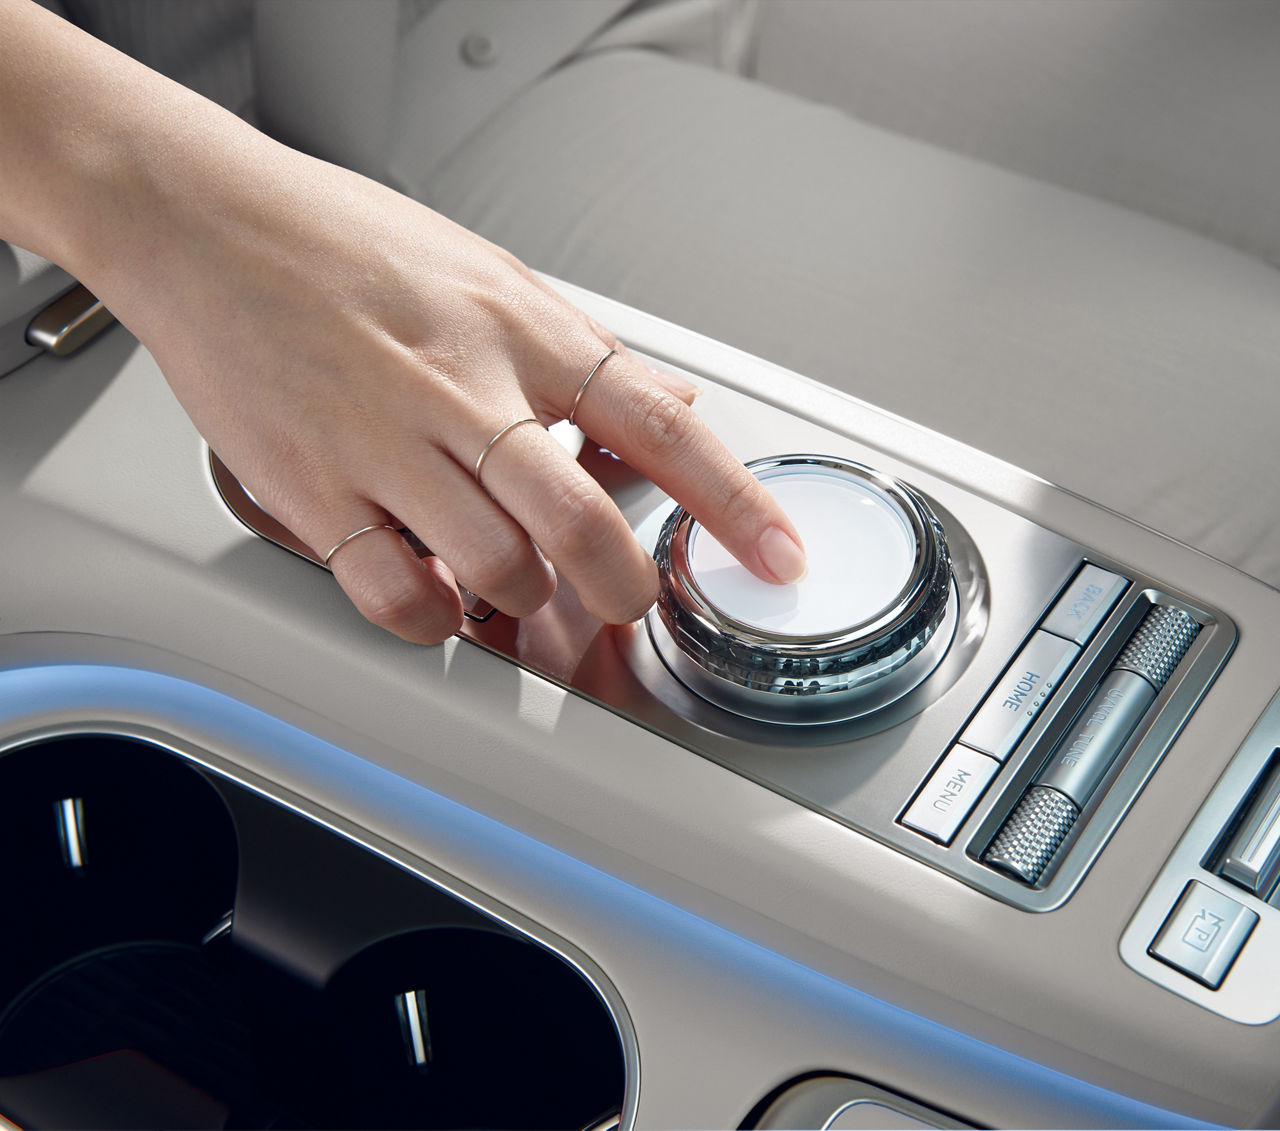 Une main utilise un contrôleur tactile sur la console centrale d'une voiture